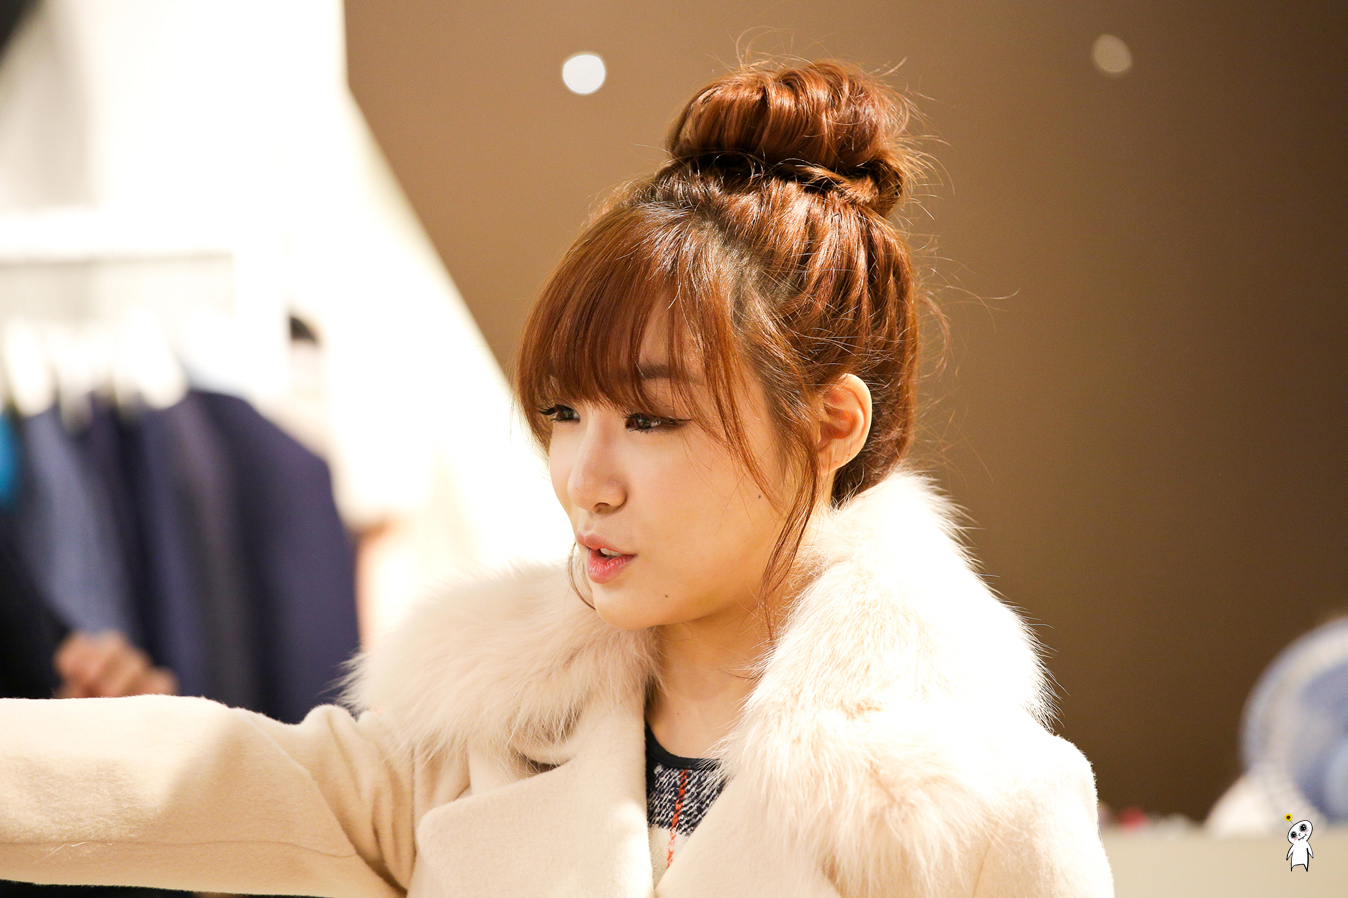 [PIC][28-11-2013]Tiffany ghé thăm cửa hàng "QUA" ở Hyundai Department Store vào trưa nay - Page 3 266B644152980C9601DC5E